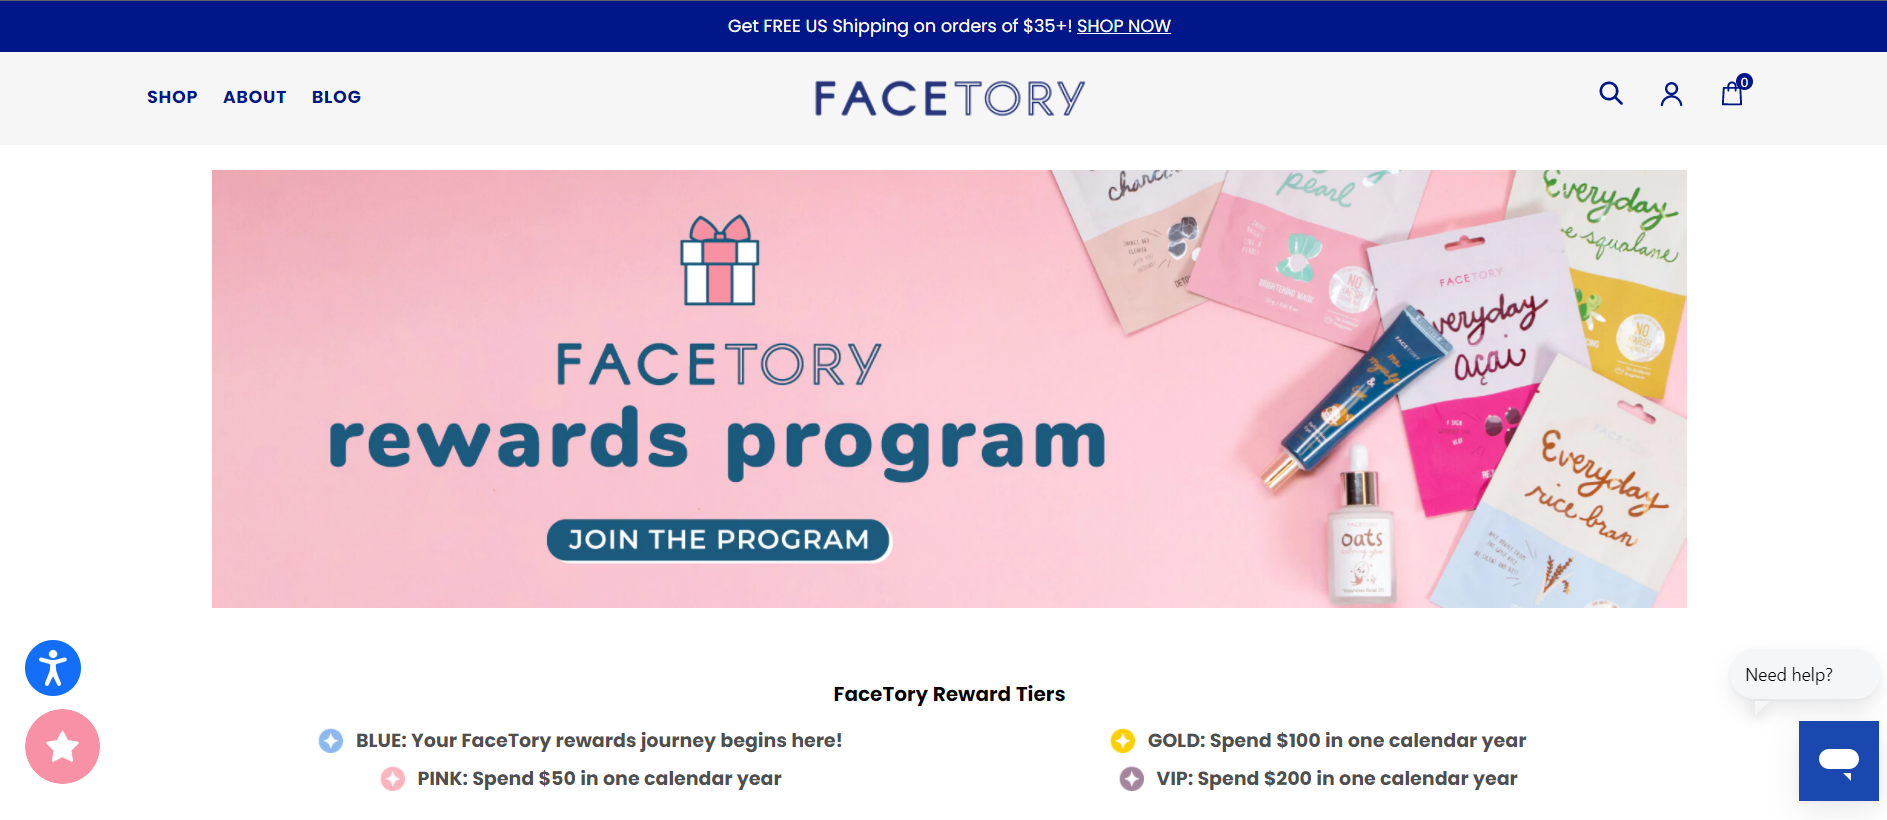 FaceTory, a Korean skin-care brand